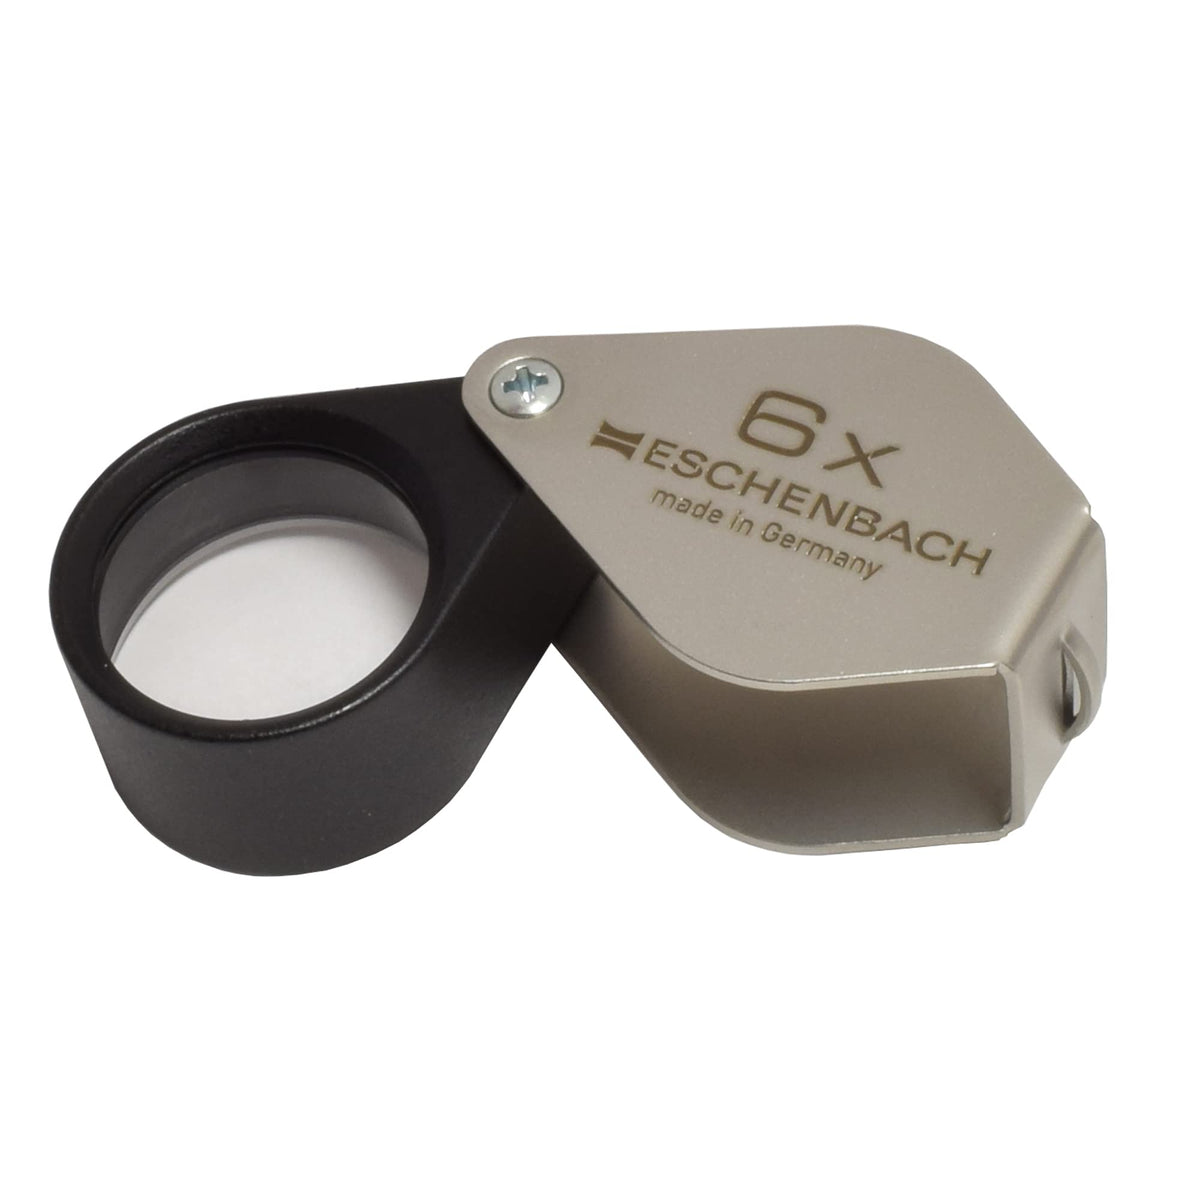 Eschenbach 10x Folding Magnifier